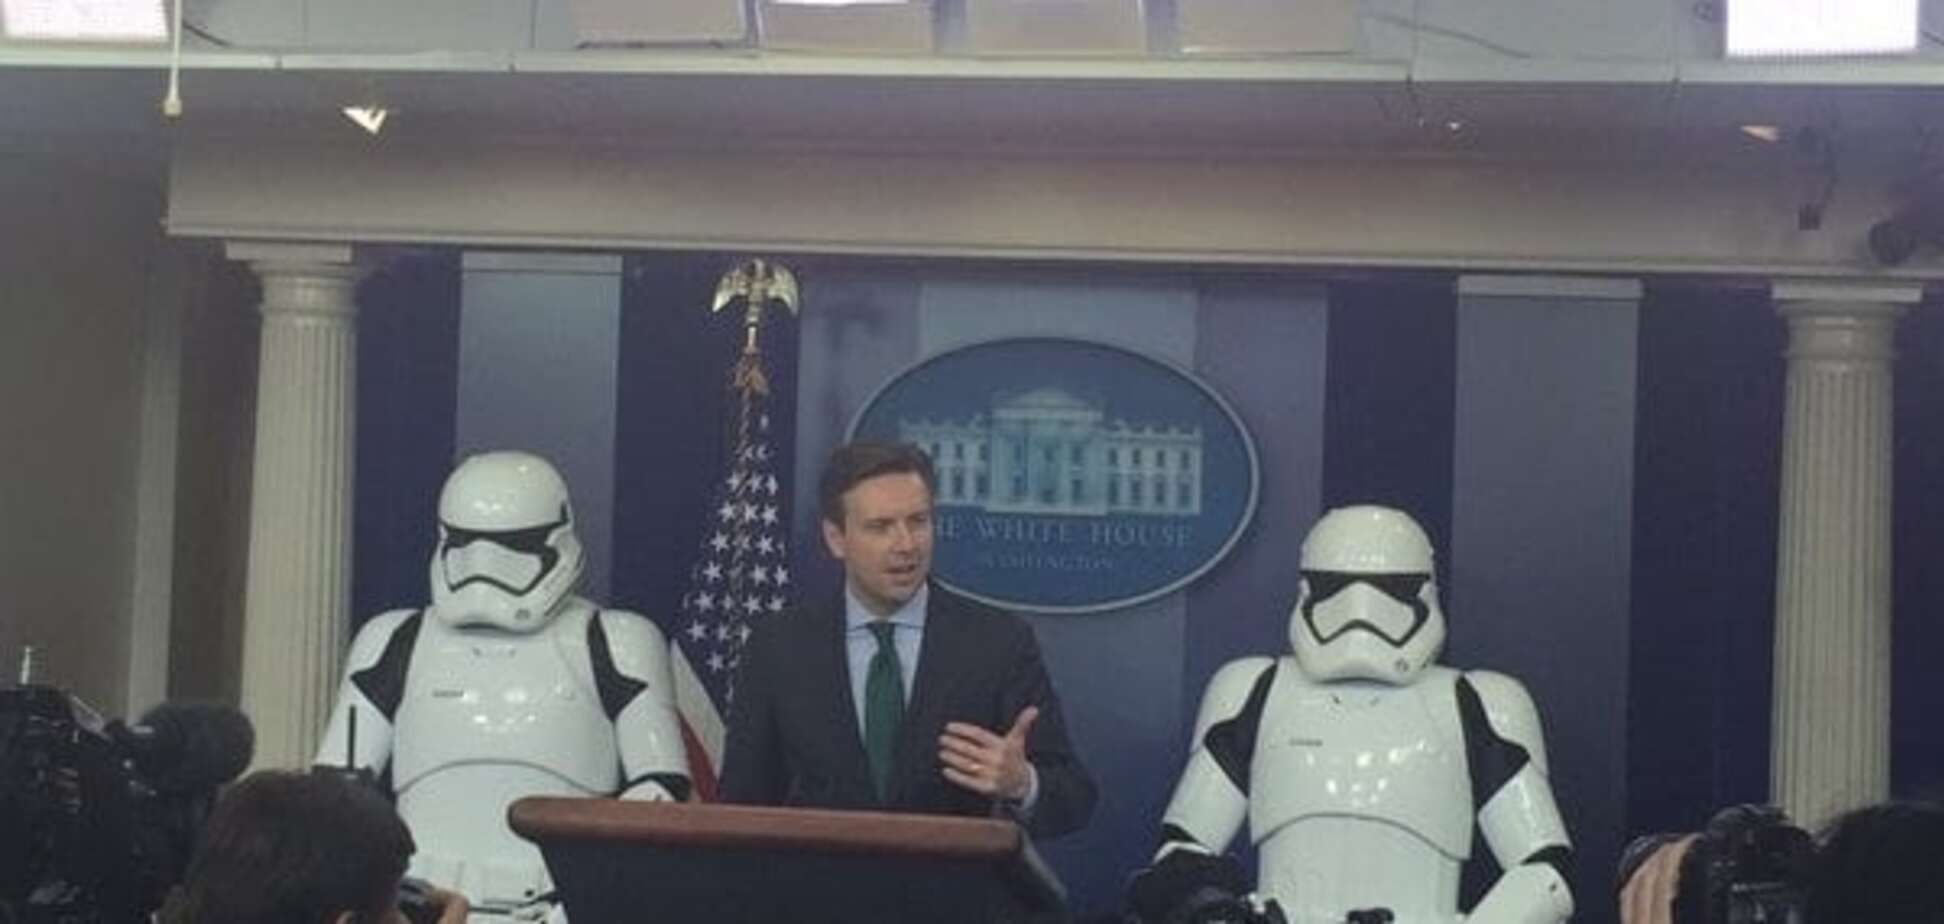 Делу время, потехе час: в Белом доме устроили показ 'Звездных войн'